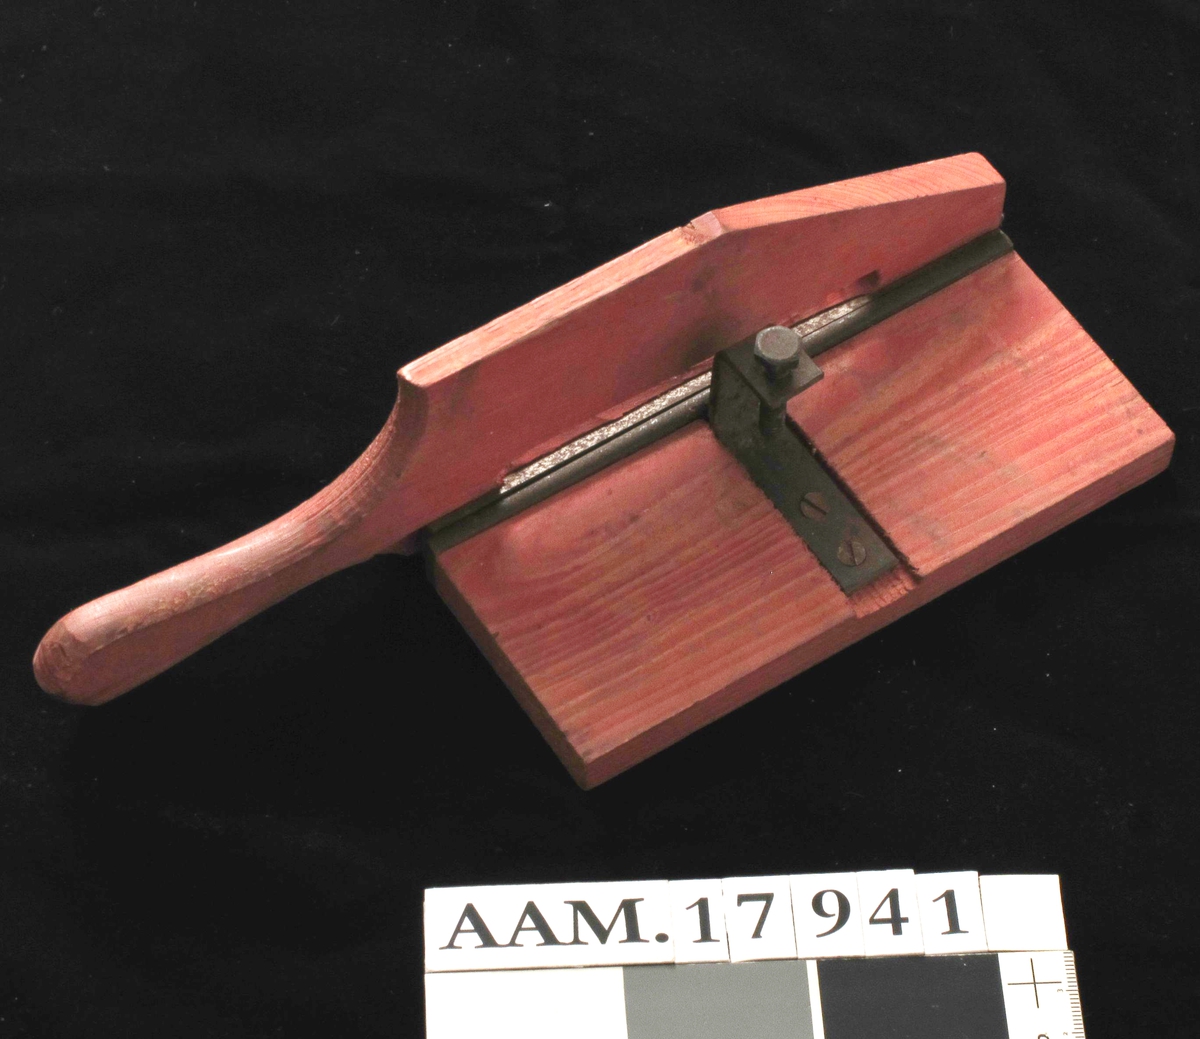 Skjæremaskin for tobakk,  fra krigen 1940-45.   
Furu,  rødmalt,   jernkniv.   
Kniv uten skarp egg. Form som en papirskjærer,  med håndtak/kniv langs den ene langside. Stilleskrue pm.  Tilstand: jernet rustent. Virker lite brukt.